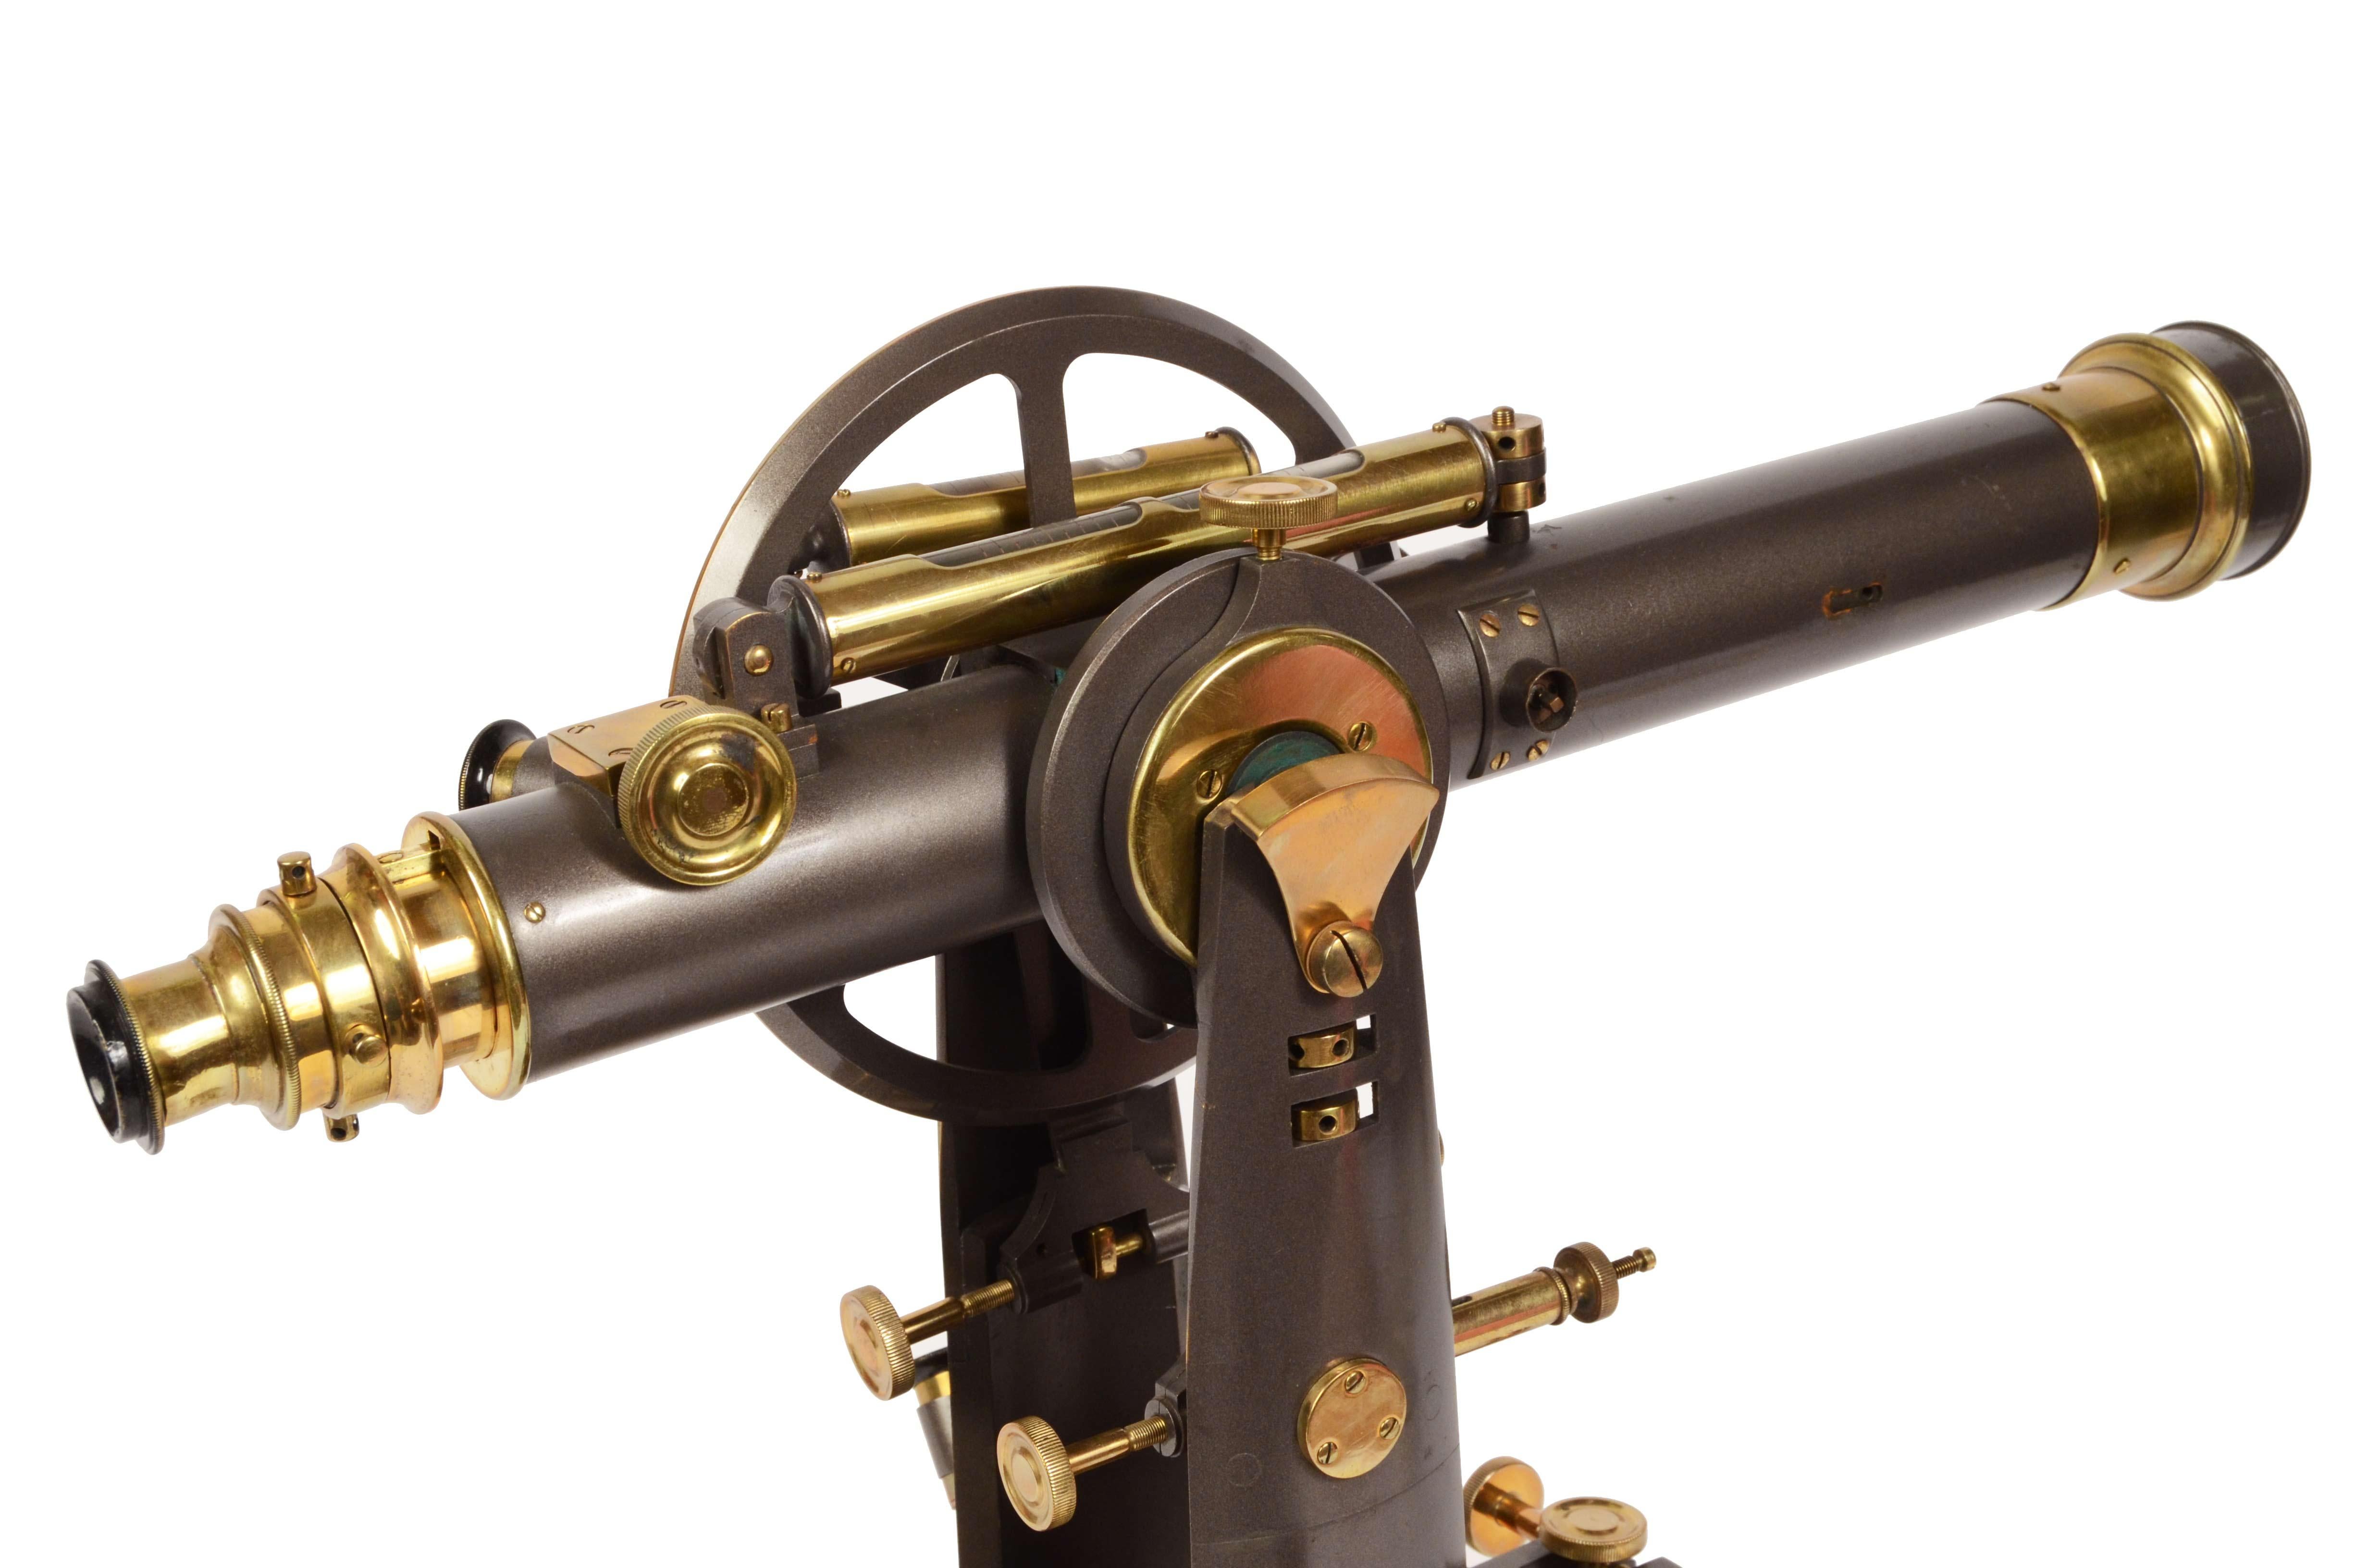 Late 19th Century 1870s Italian Theodolite Antique Earth Scientific Instrument of Measurement